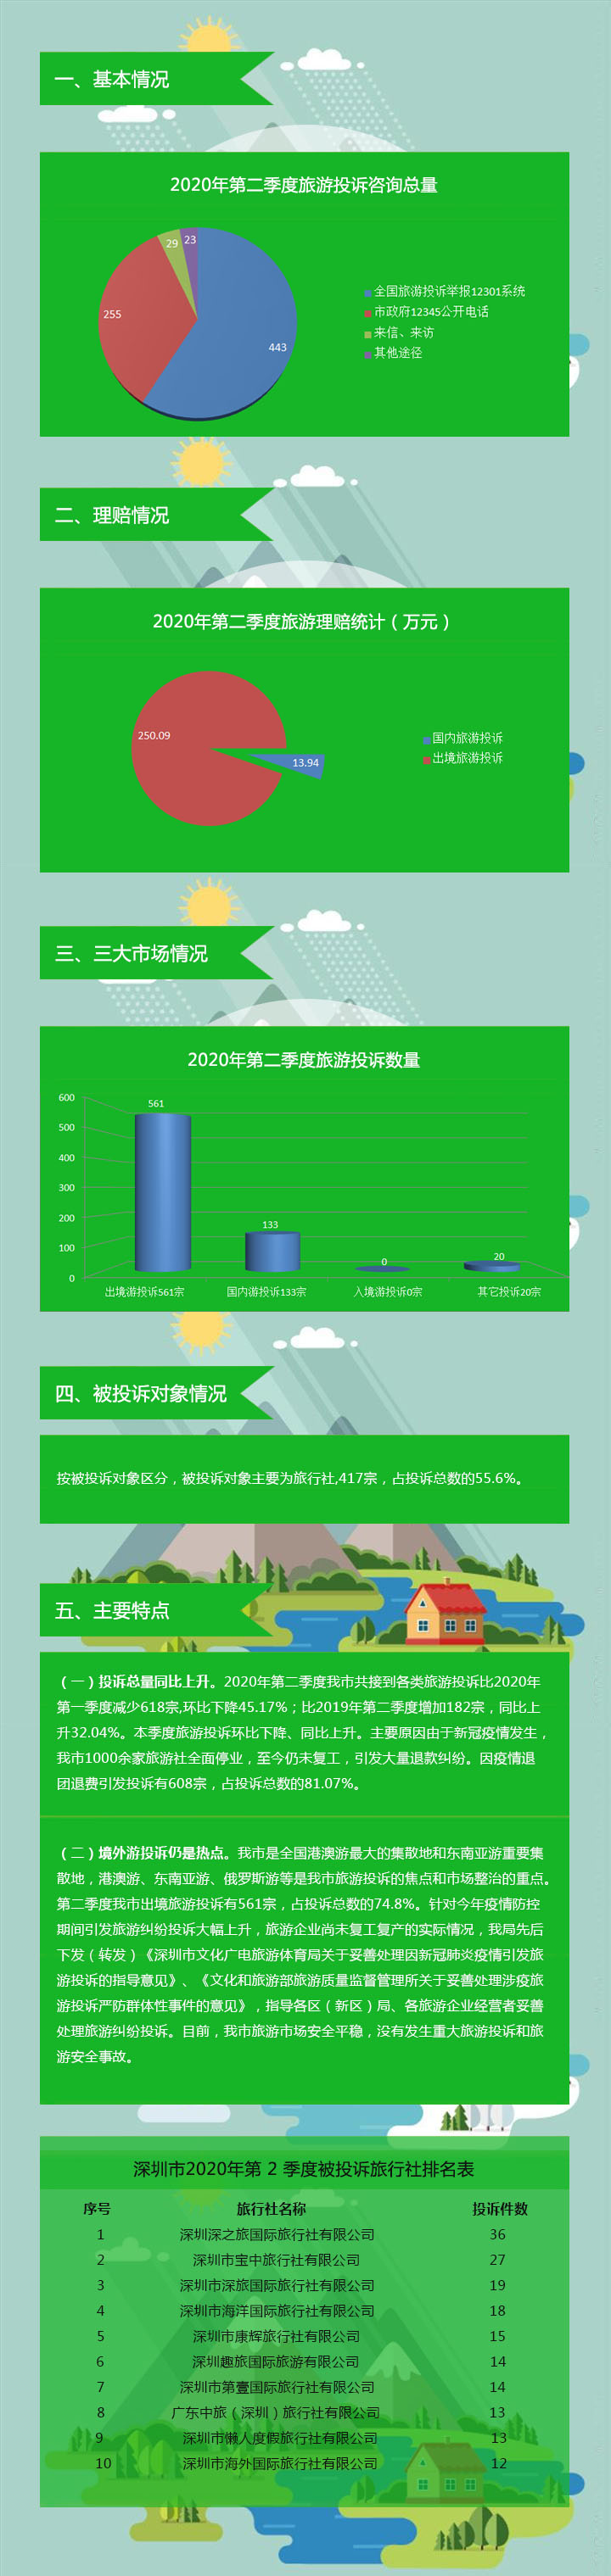 【图解】深圳市旅游监管简报（2020年第二季度）